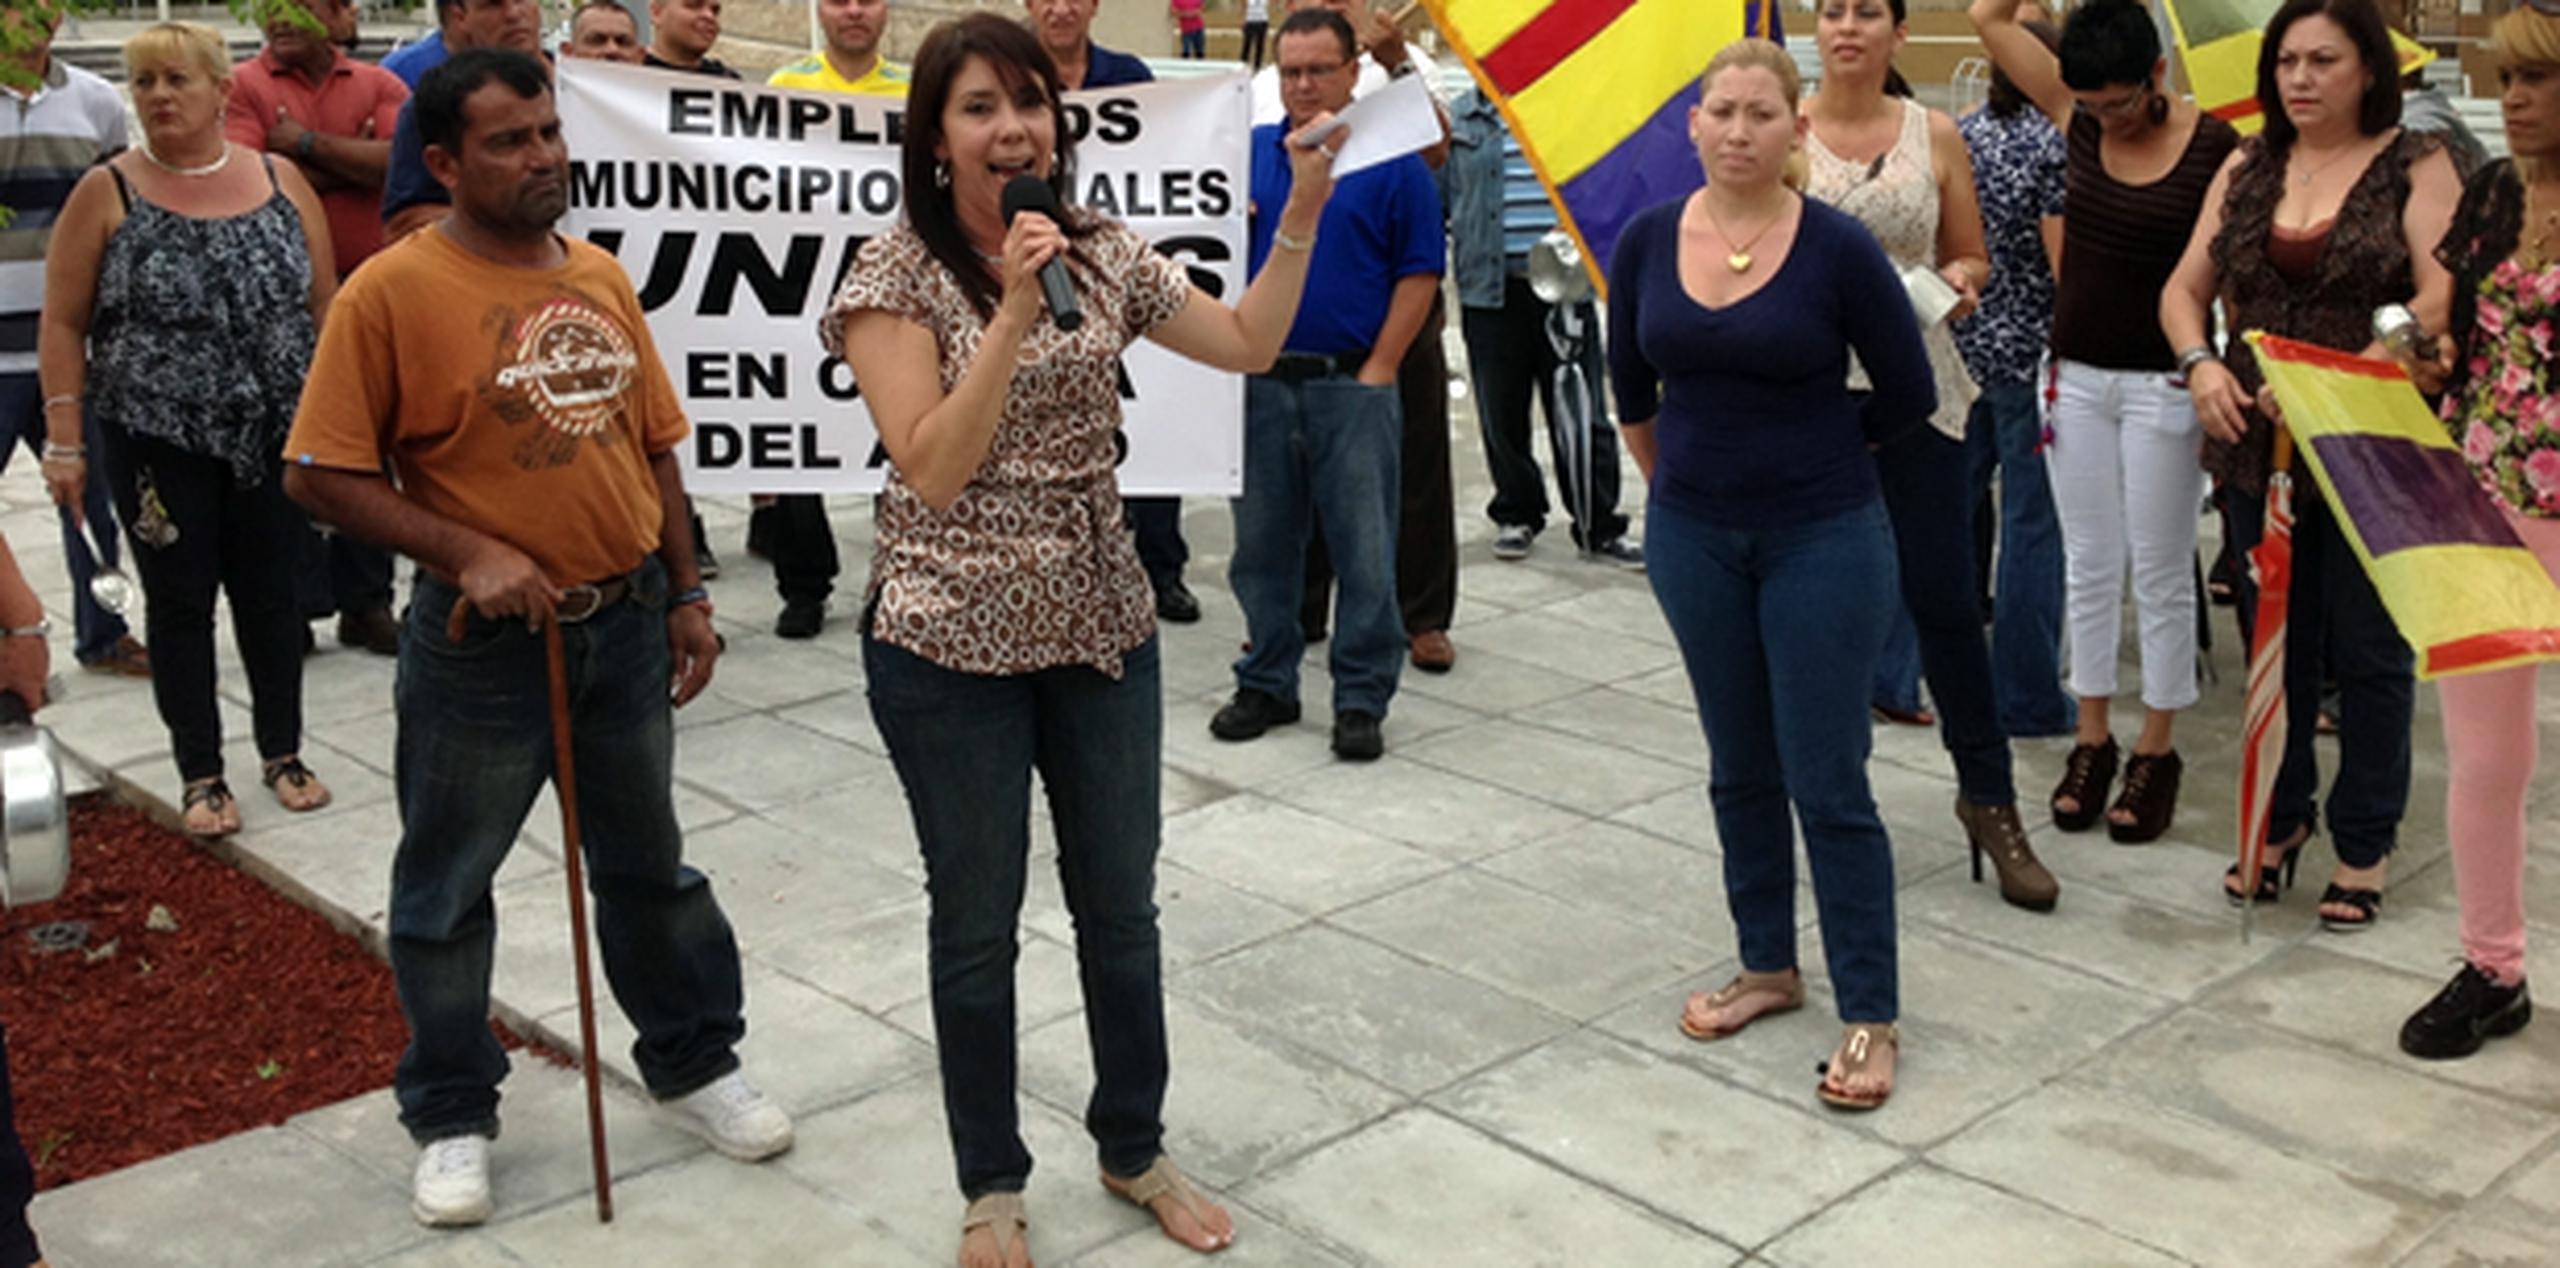 El grupo denunció que el alcalde Rodríguez Pérez “ha establecido un ambiente hostil en contra de los empleados". (Suministrada)